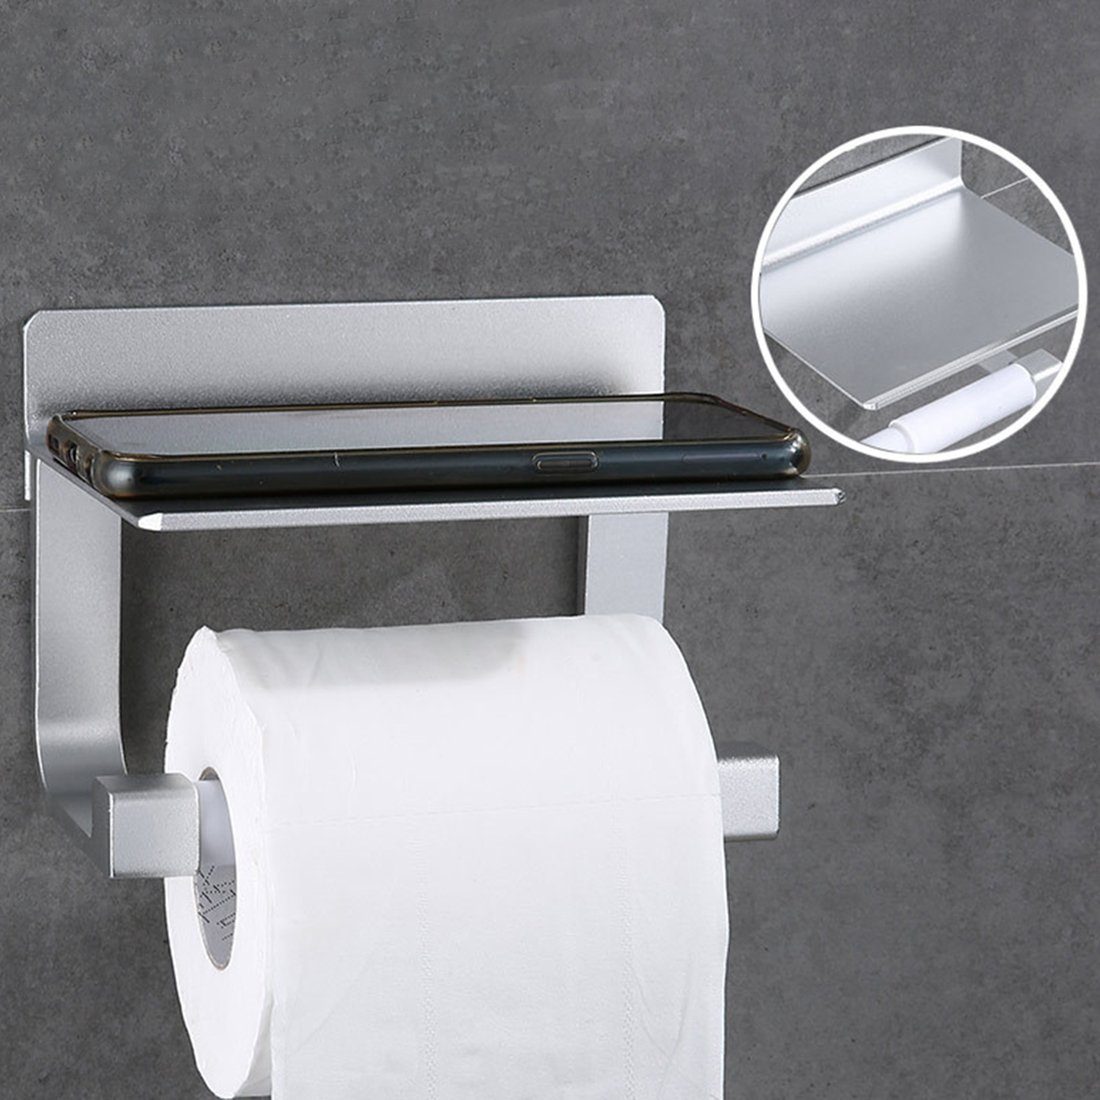 Selbstklebend Toilettenpapierhalter Küche Klopapierhalter Ablage, Toilettenpapierhalter mit Ohne Badzimmer Bohren, mit für Kleber grey Klorollenhalter und Haiaveng